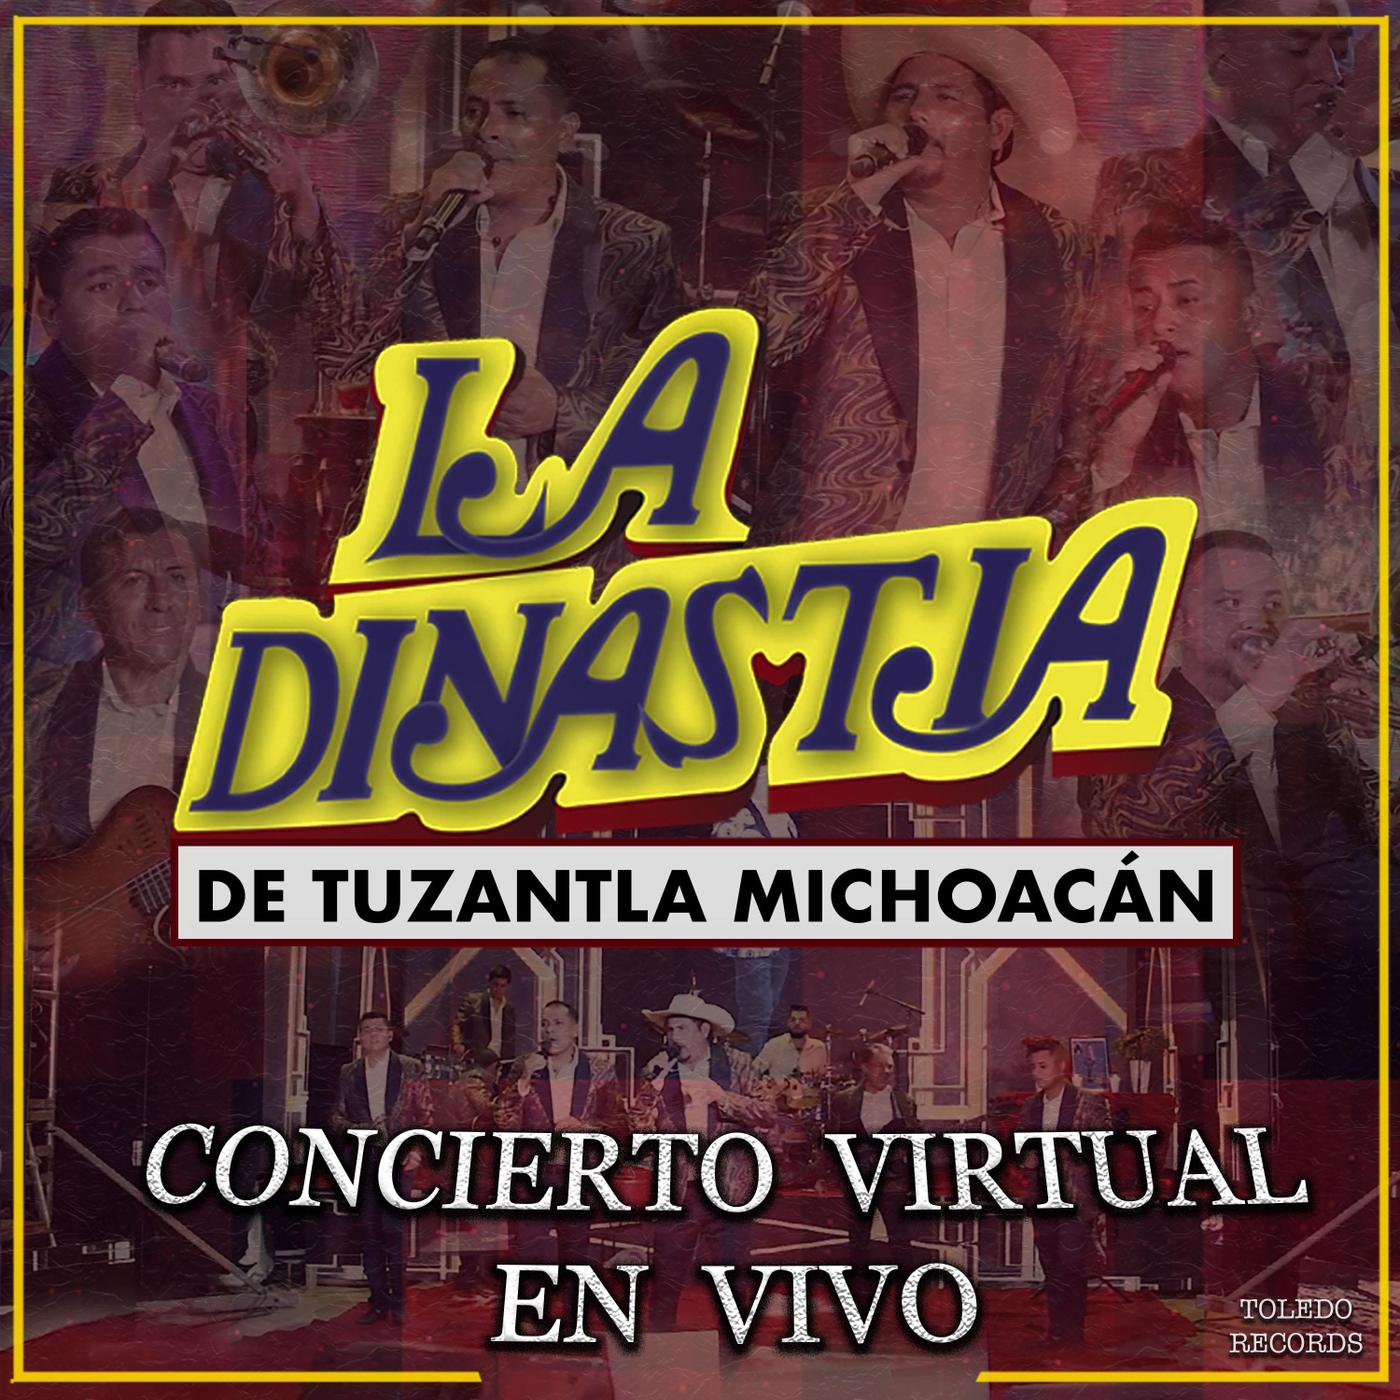 La Dinastía de Tuzantla Michoacán - Besos de Papel (En Vivo)